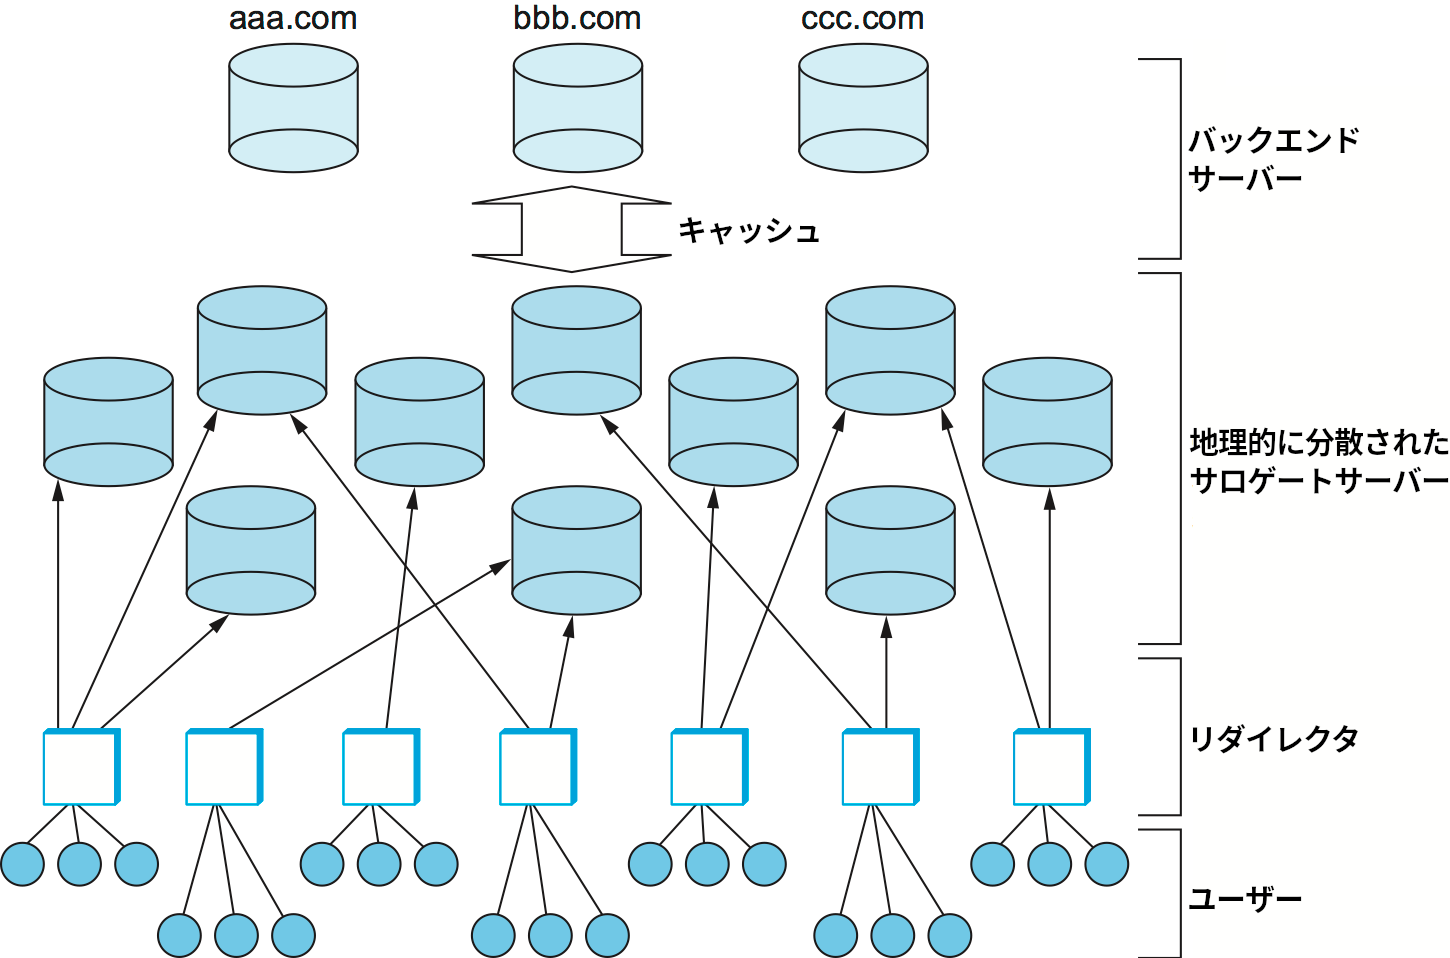 コンテンツ配送ネットワーク (CDN) の構成要素